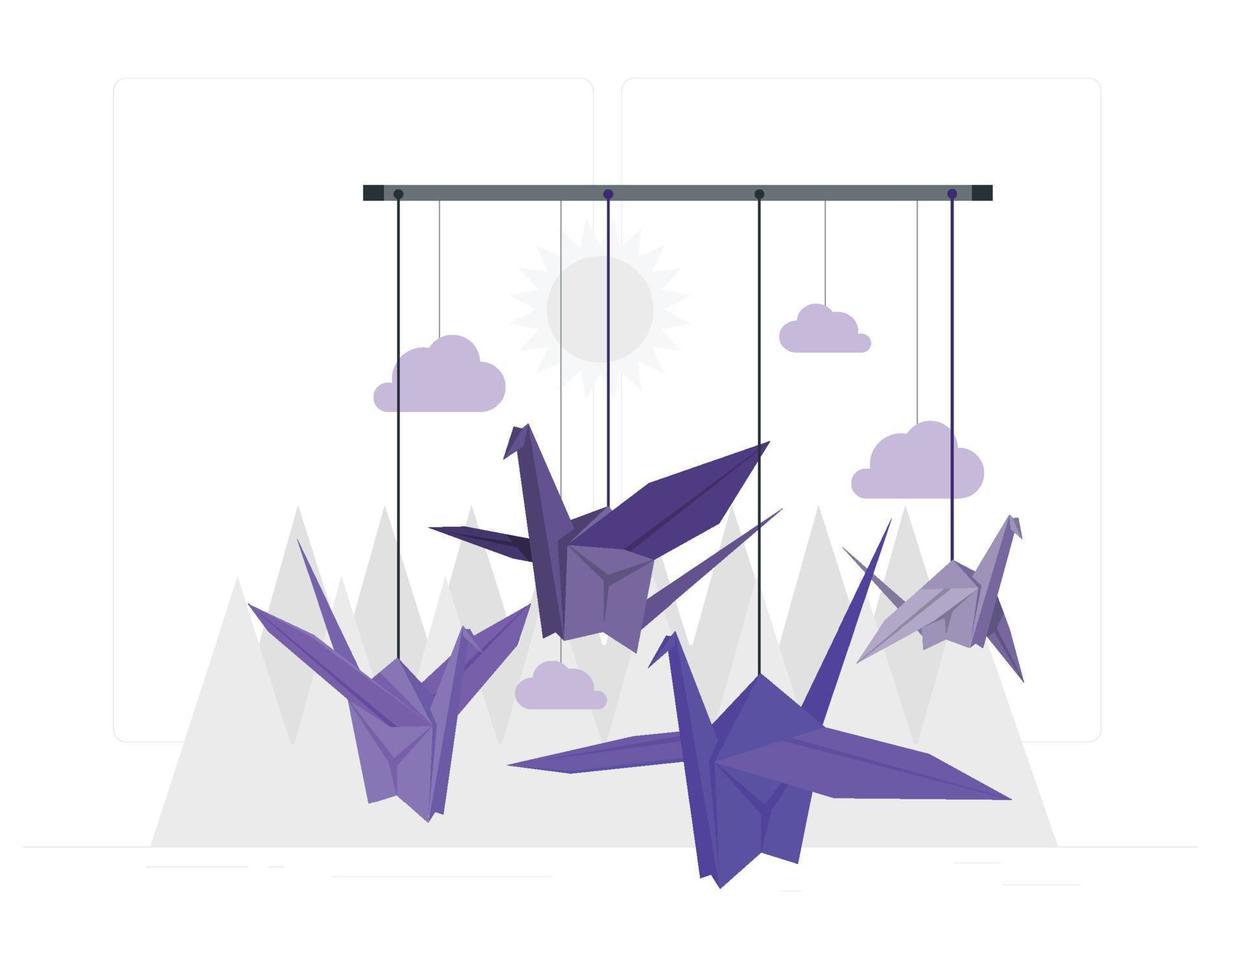 pássaros de origami começam a voar em espaço fechado vetor